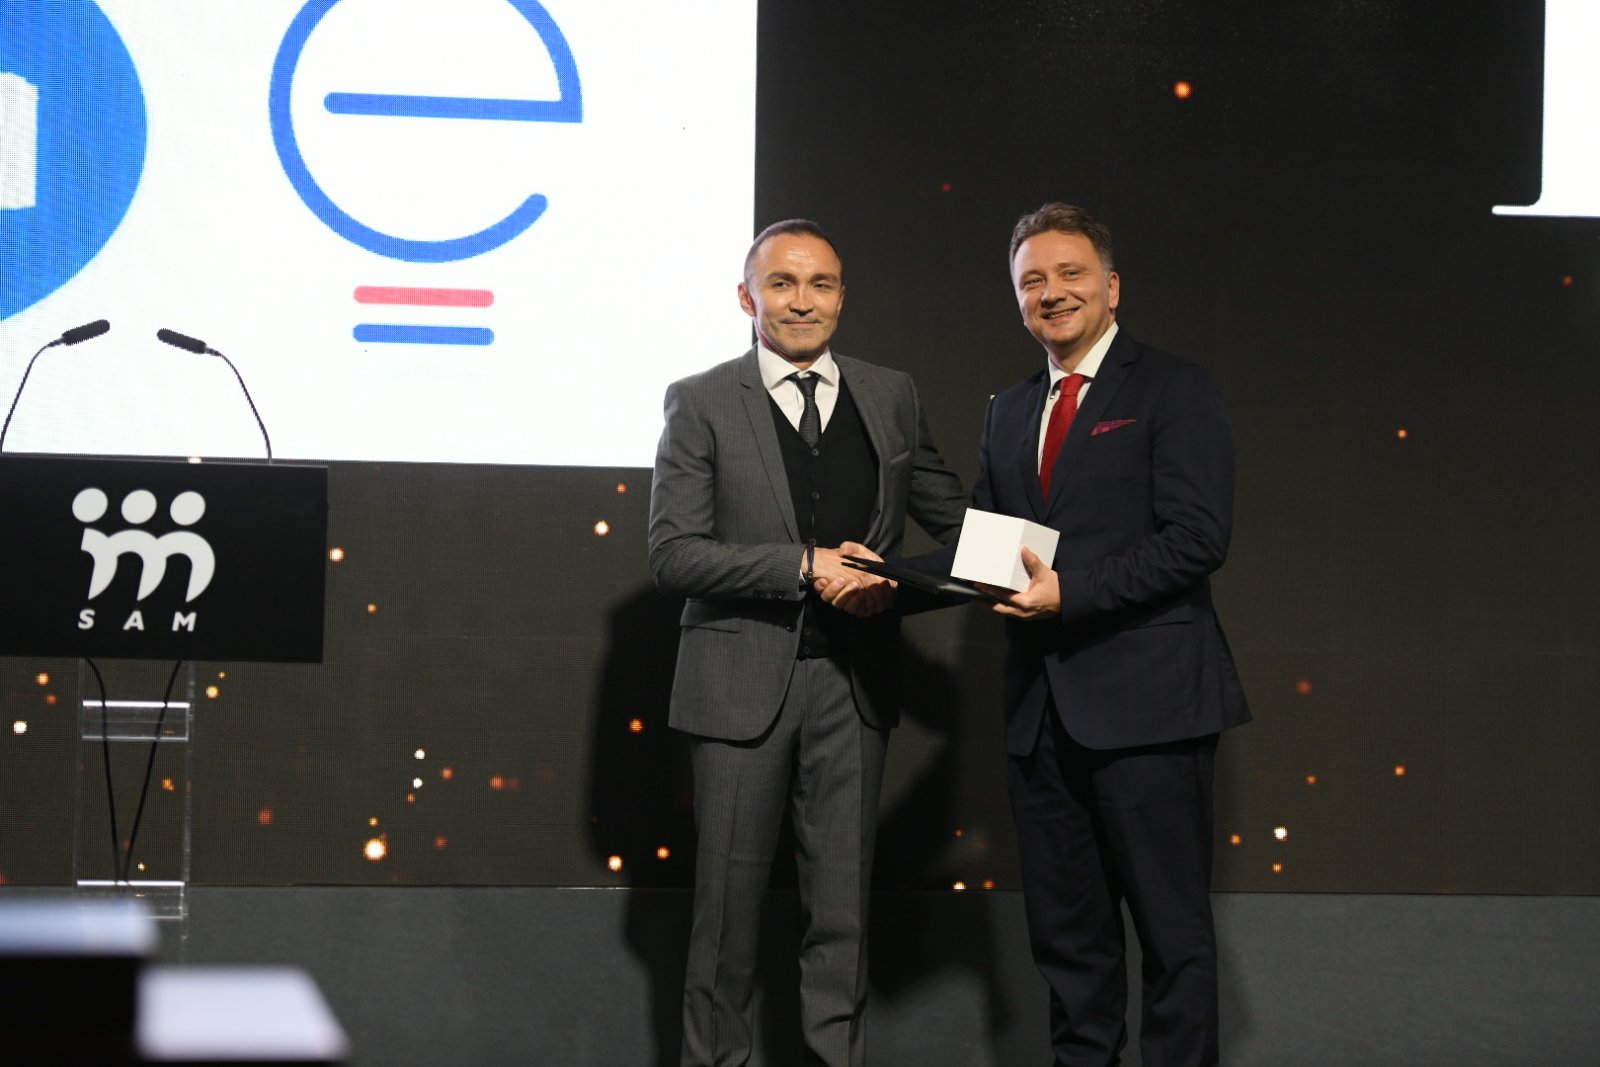 Kancelarija za IT i eUpravu dobitnik Specijalne nagrade Srspke asocijacije menadžera